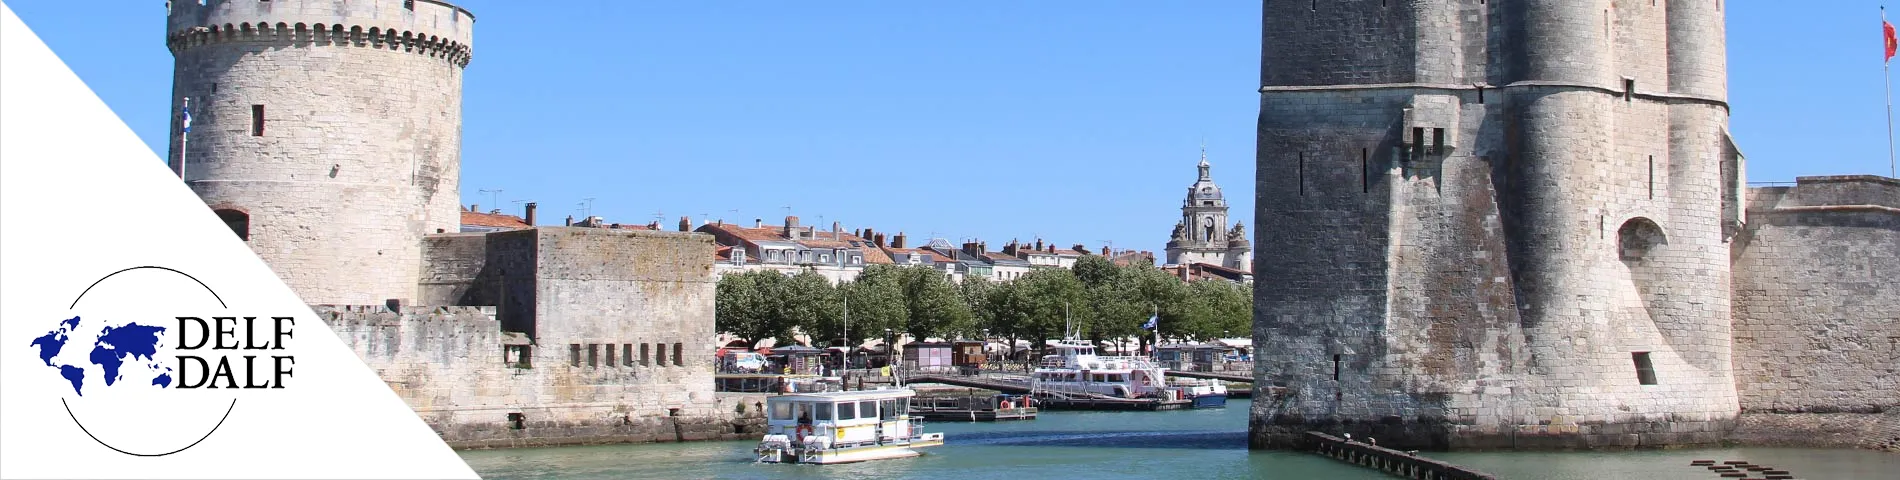 La Rochelle - DELF / DALF